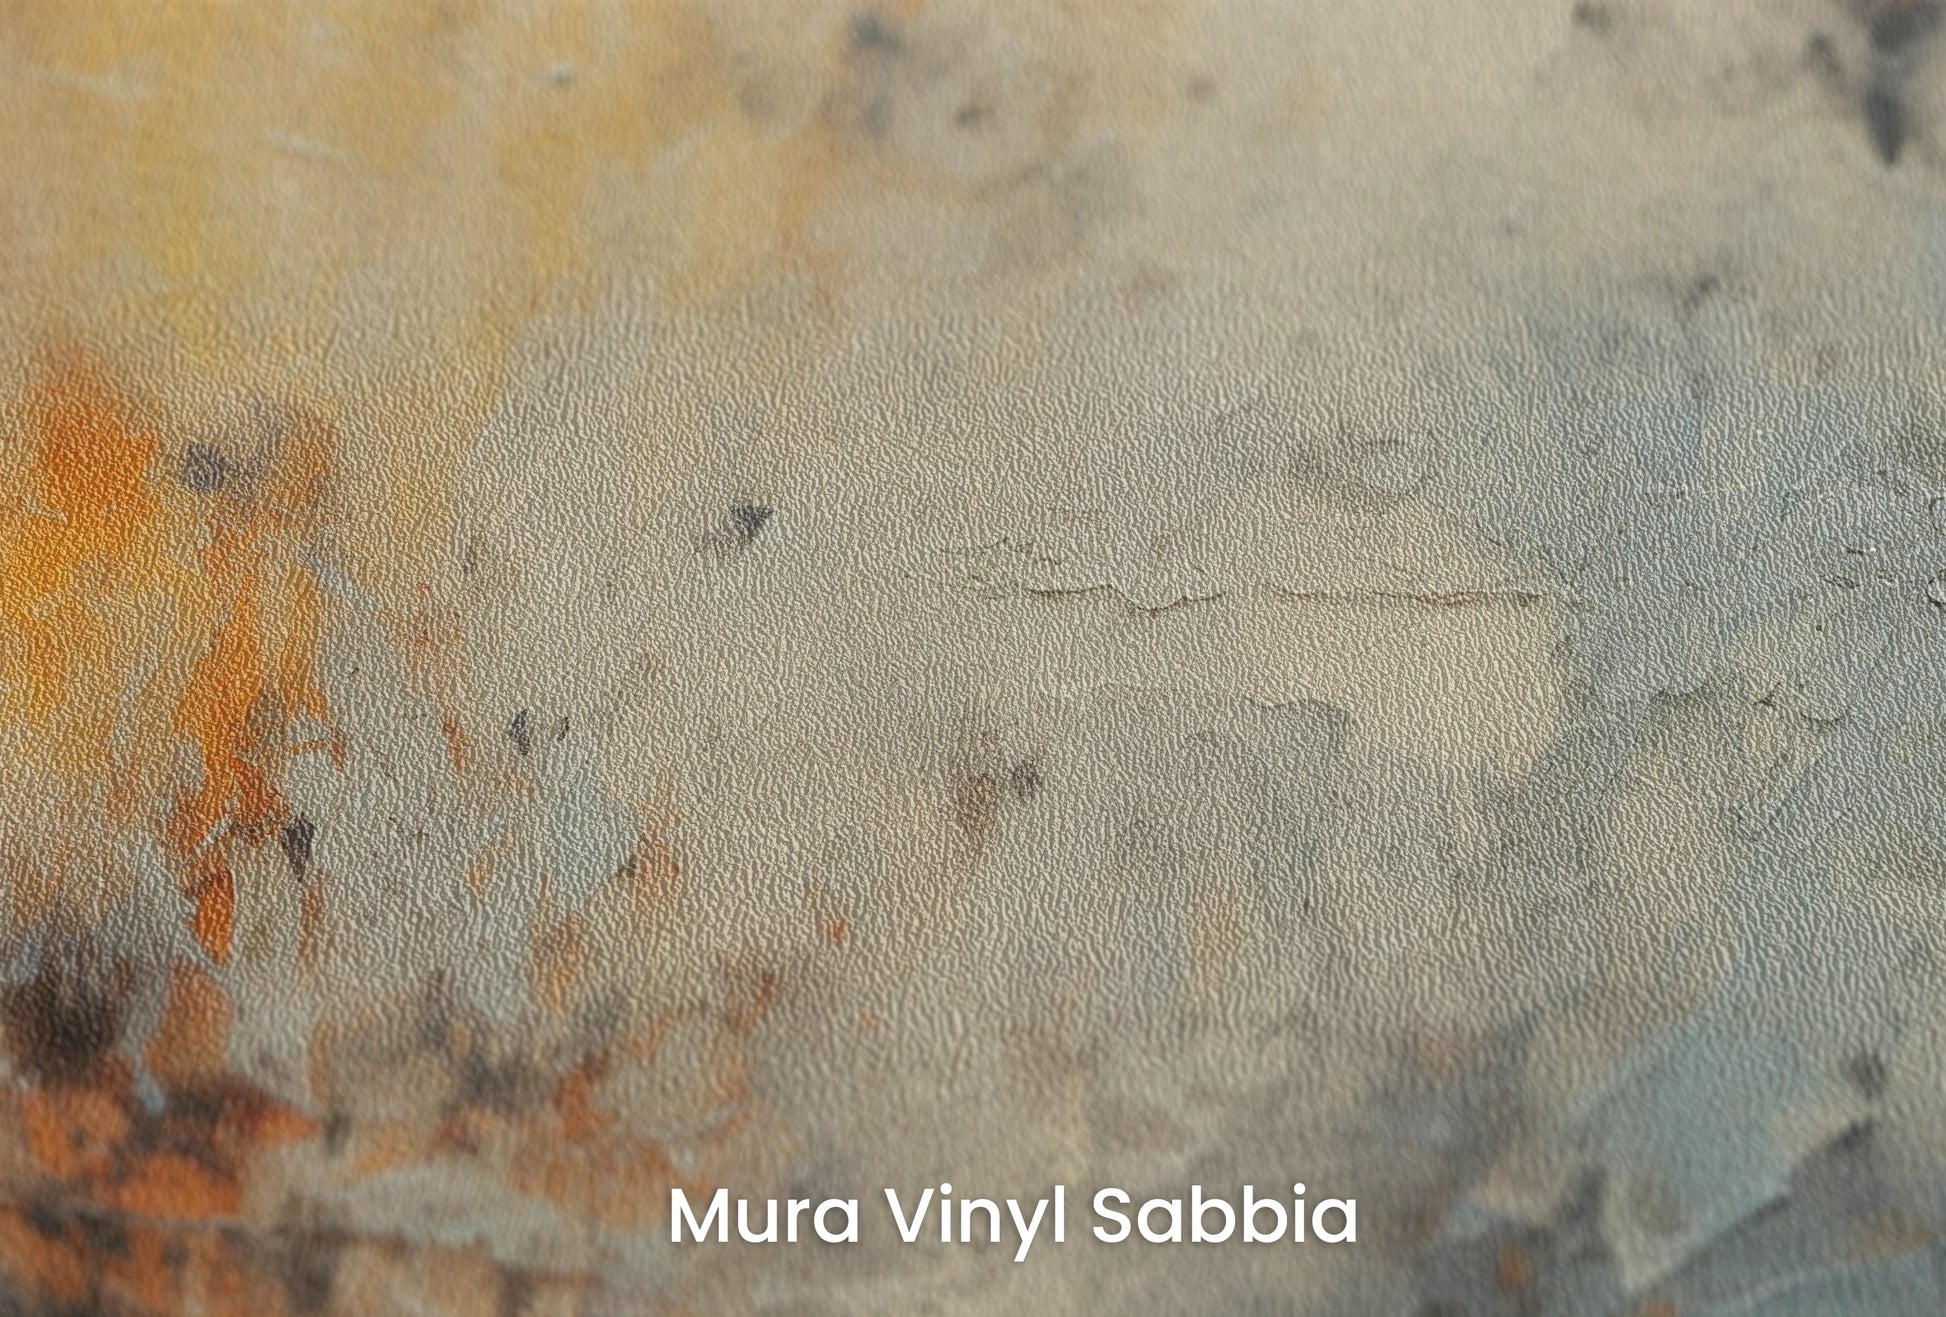 Zbliżenie na artystyczną fototapetę o nazwie Lunar Surface #3 na podłożu Mura Vinyl Sabbia struktura grubego ziarna piasku.